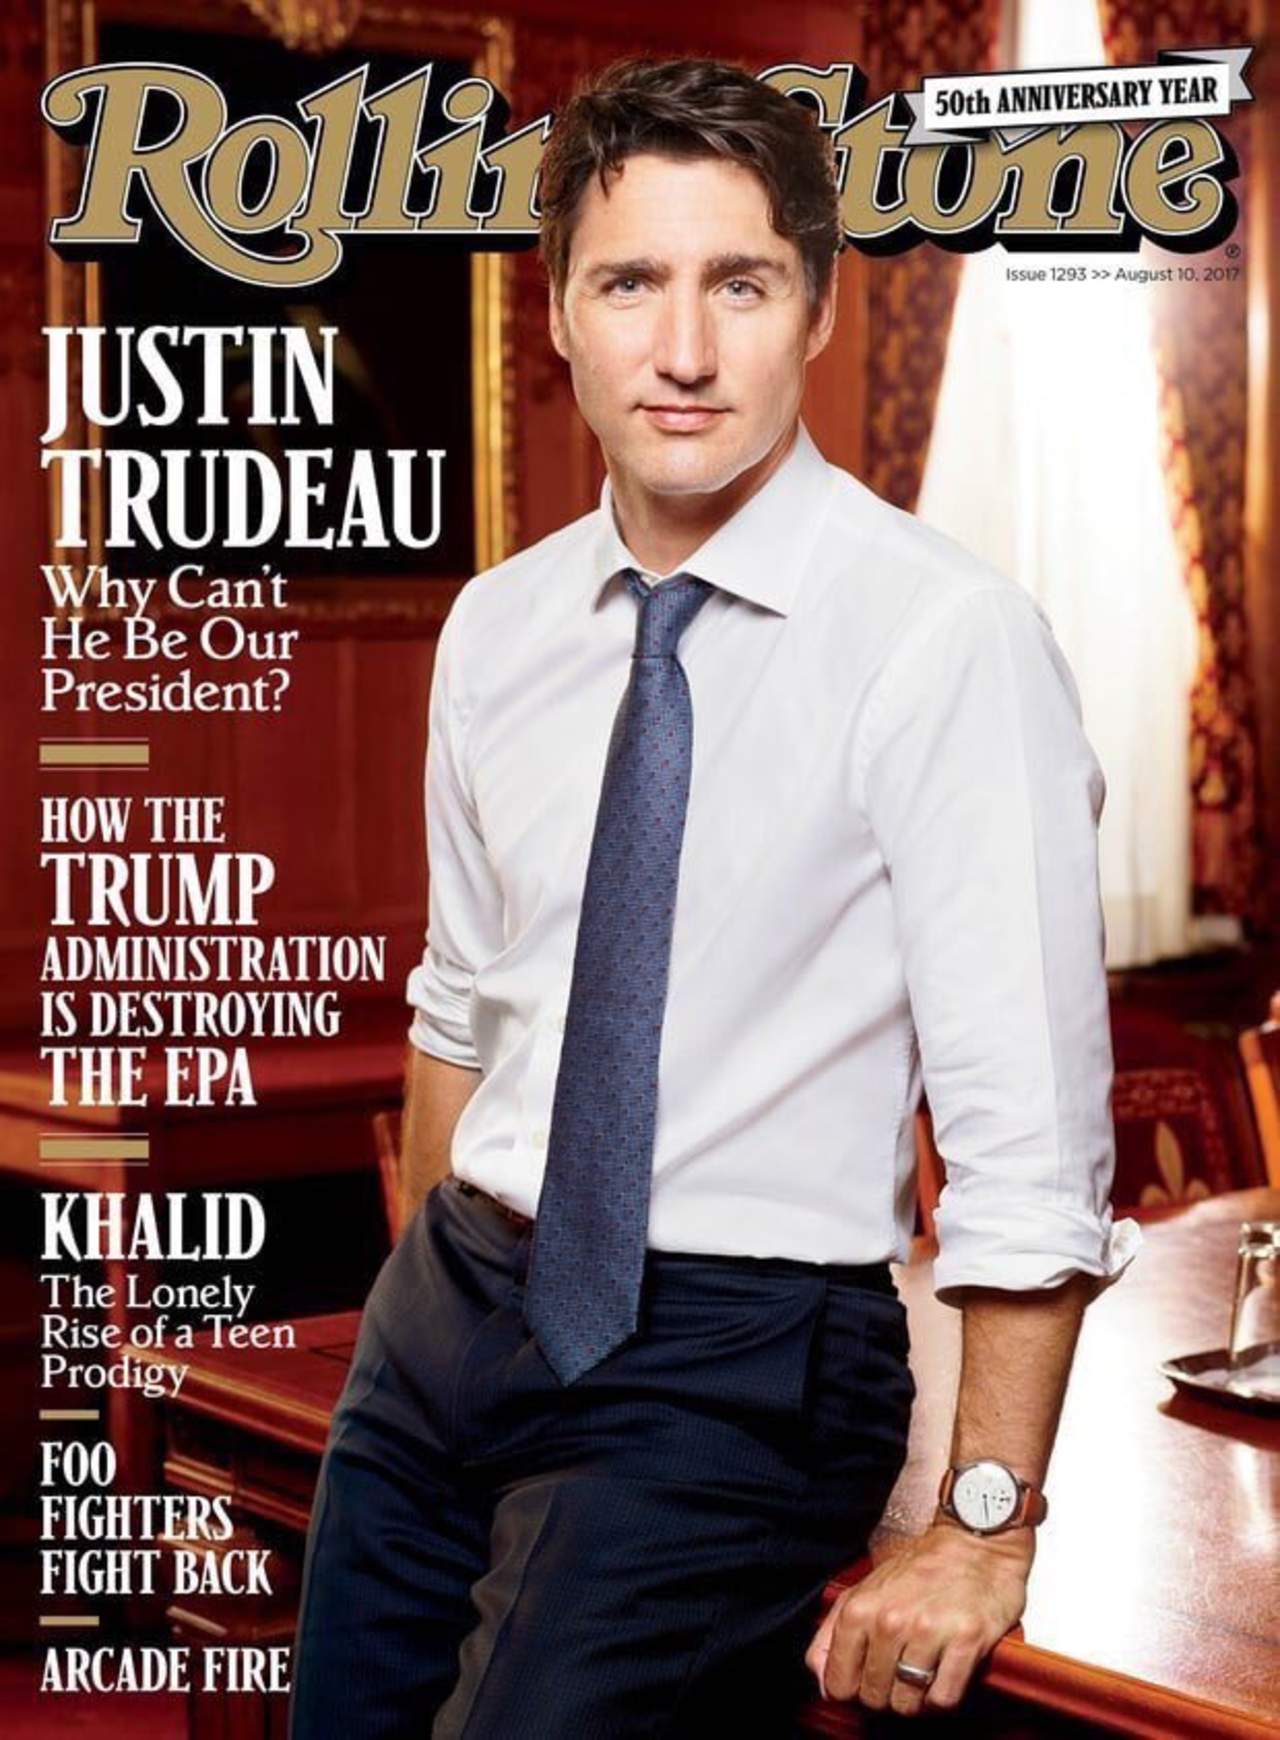 Aparece Trudeau en la portada de la revista Rolling Stone